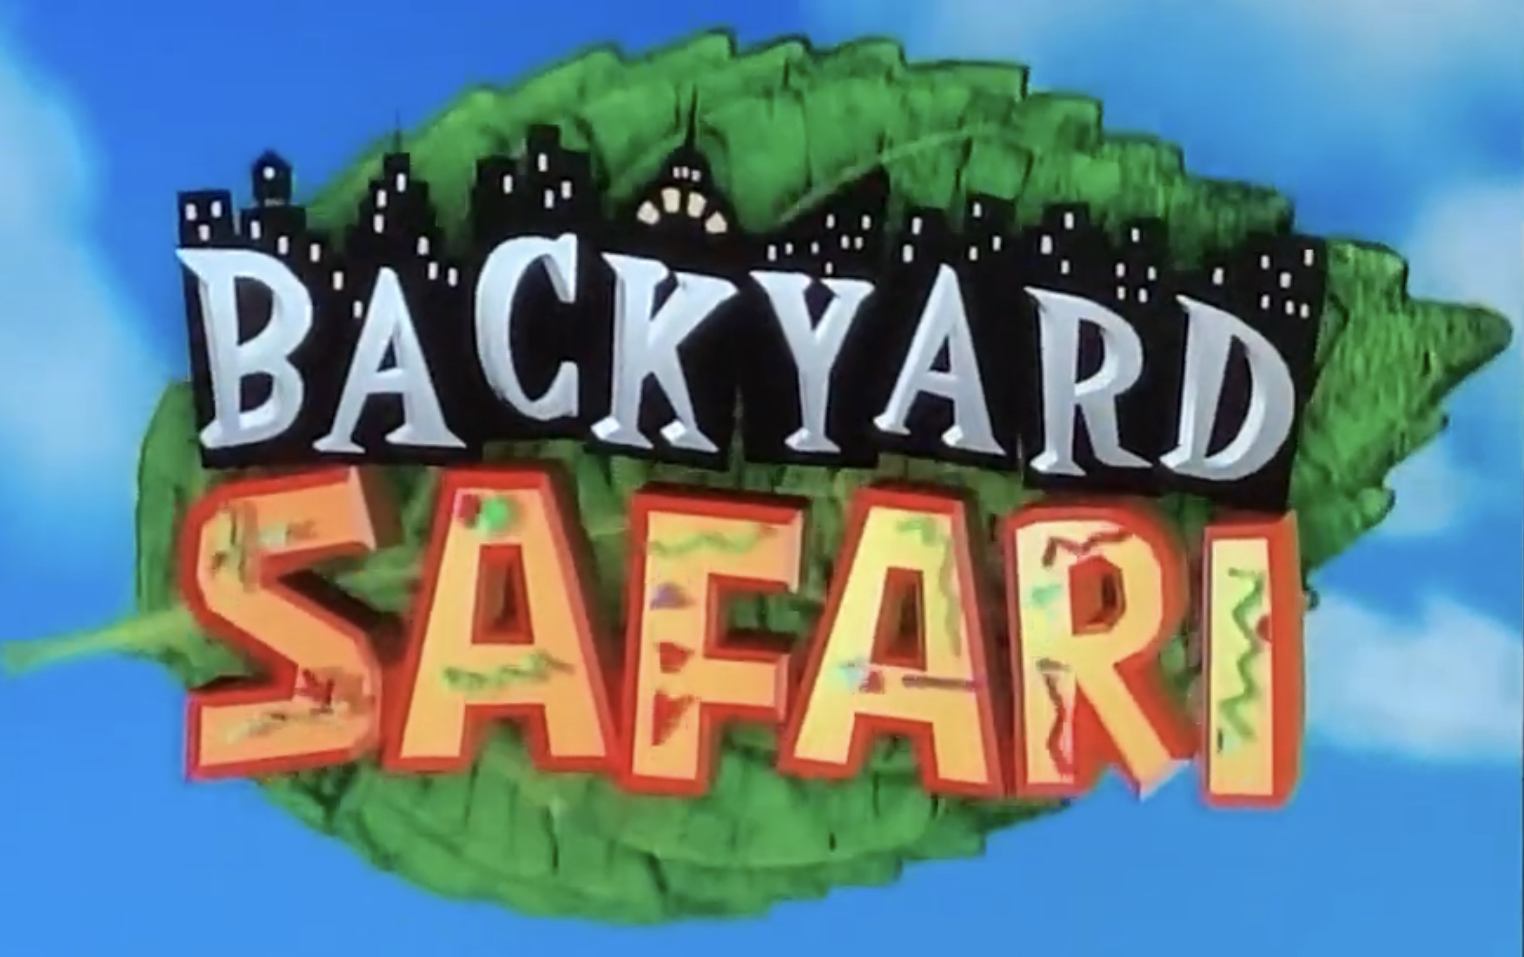 Backyard Safari logo.jpeg